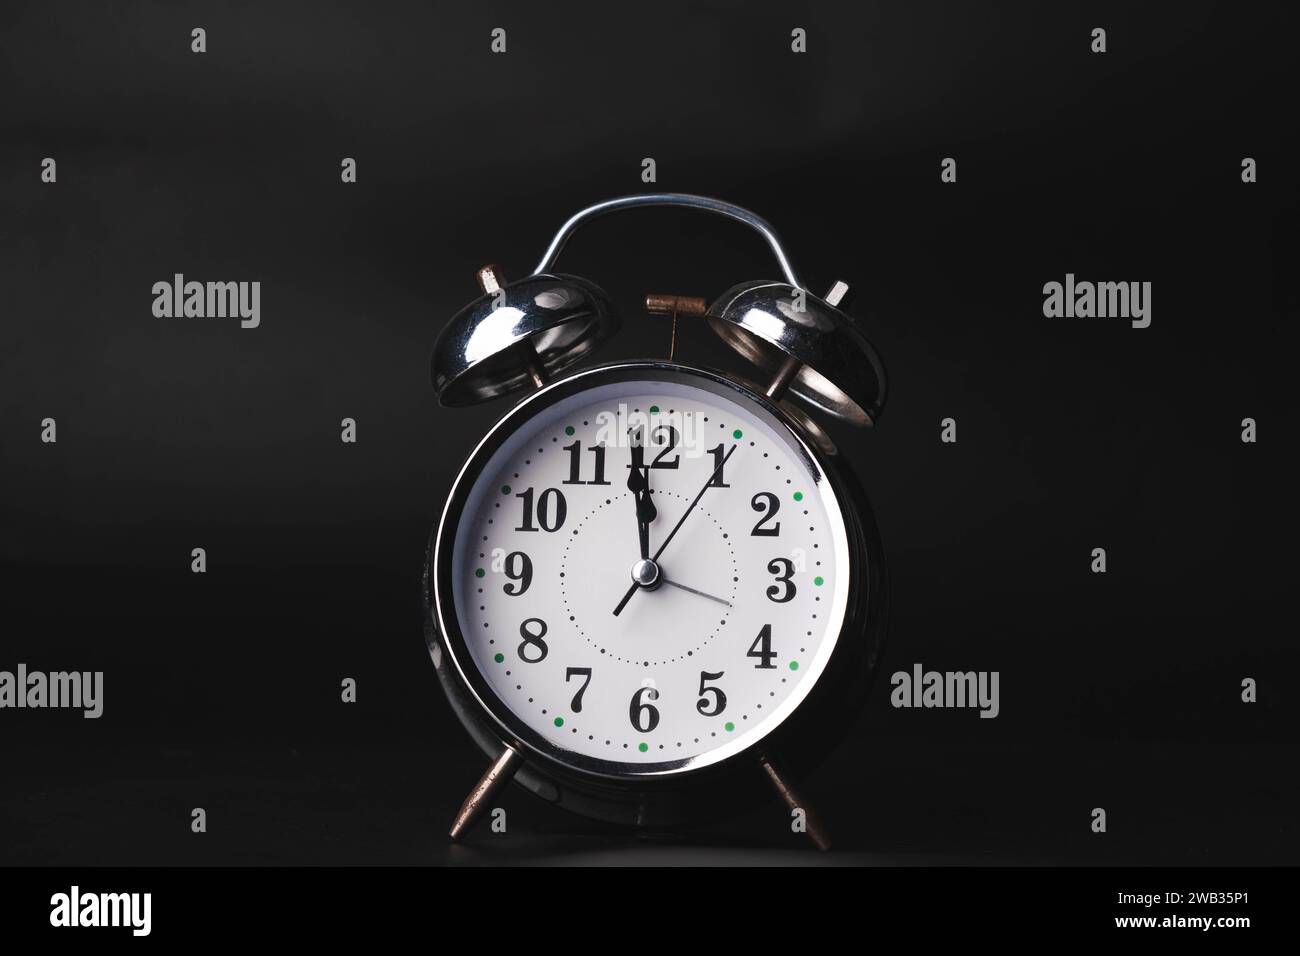 Gros plan d'un cadran de réveil rétro sur fond noir. Les aiguilles de l'horloge se déplacent rapidement, le début du temps 12:00 AM ou 12:00 PM. Banque D'Images